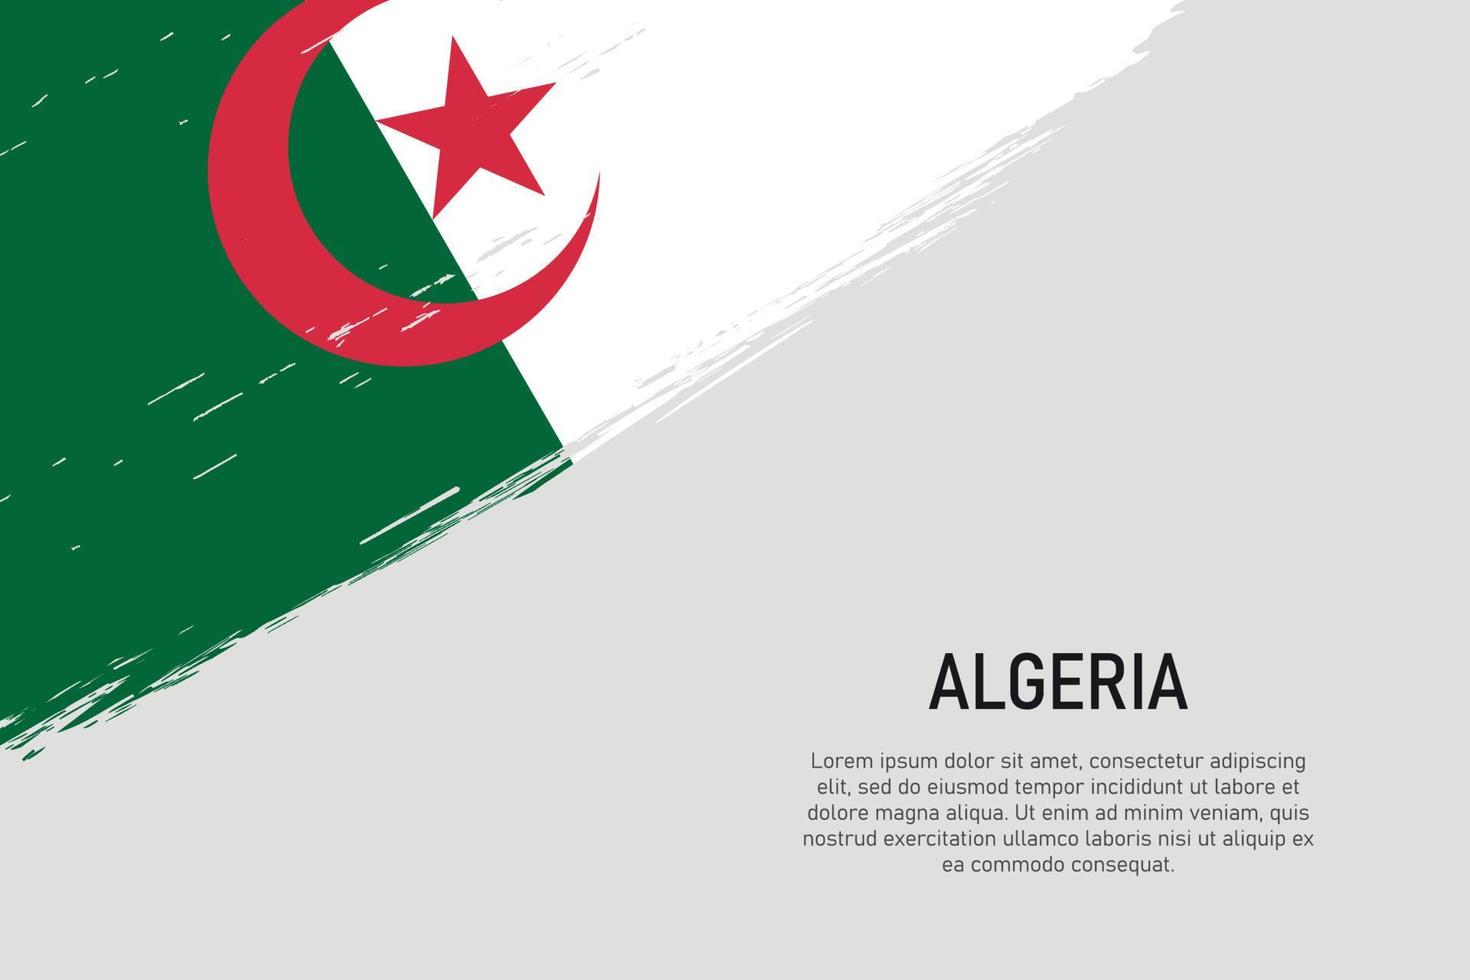 fundo de traçado de pincel estilo grunge com bandeira da argélia vetor